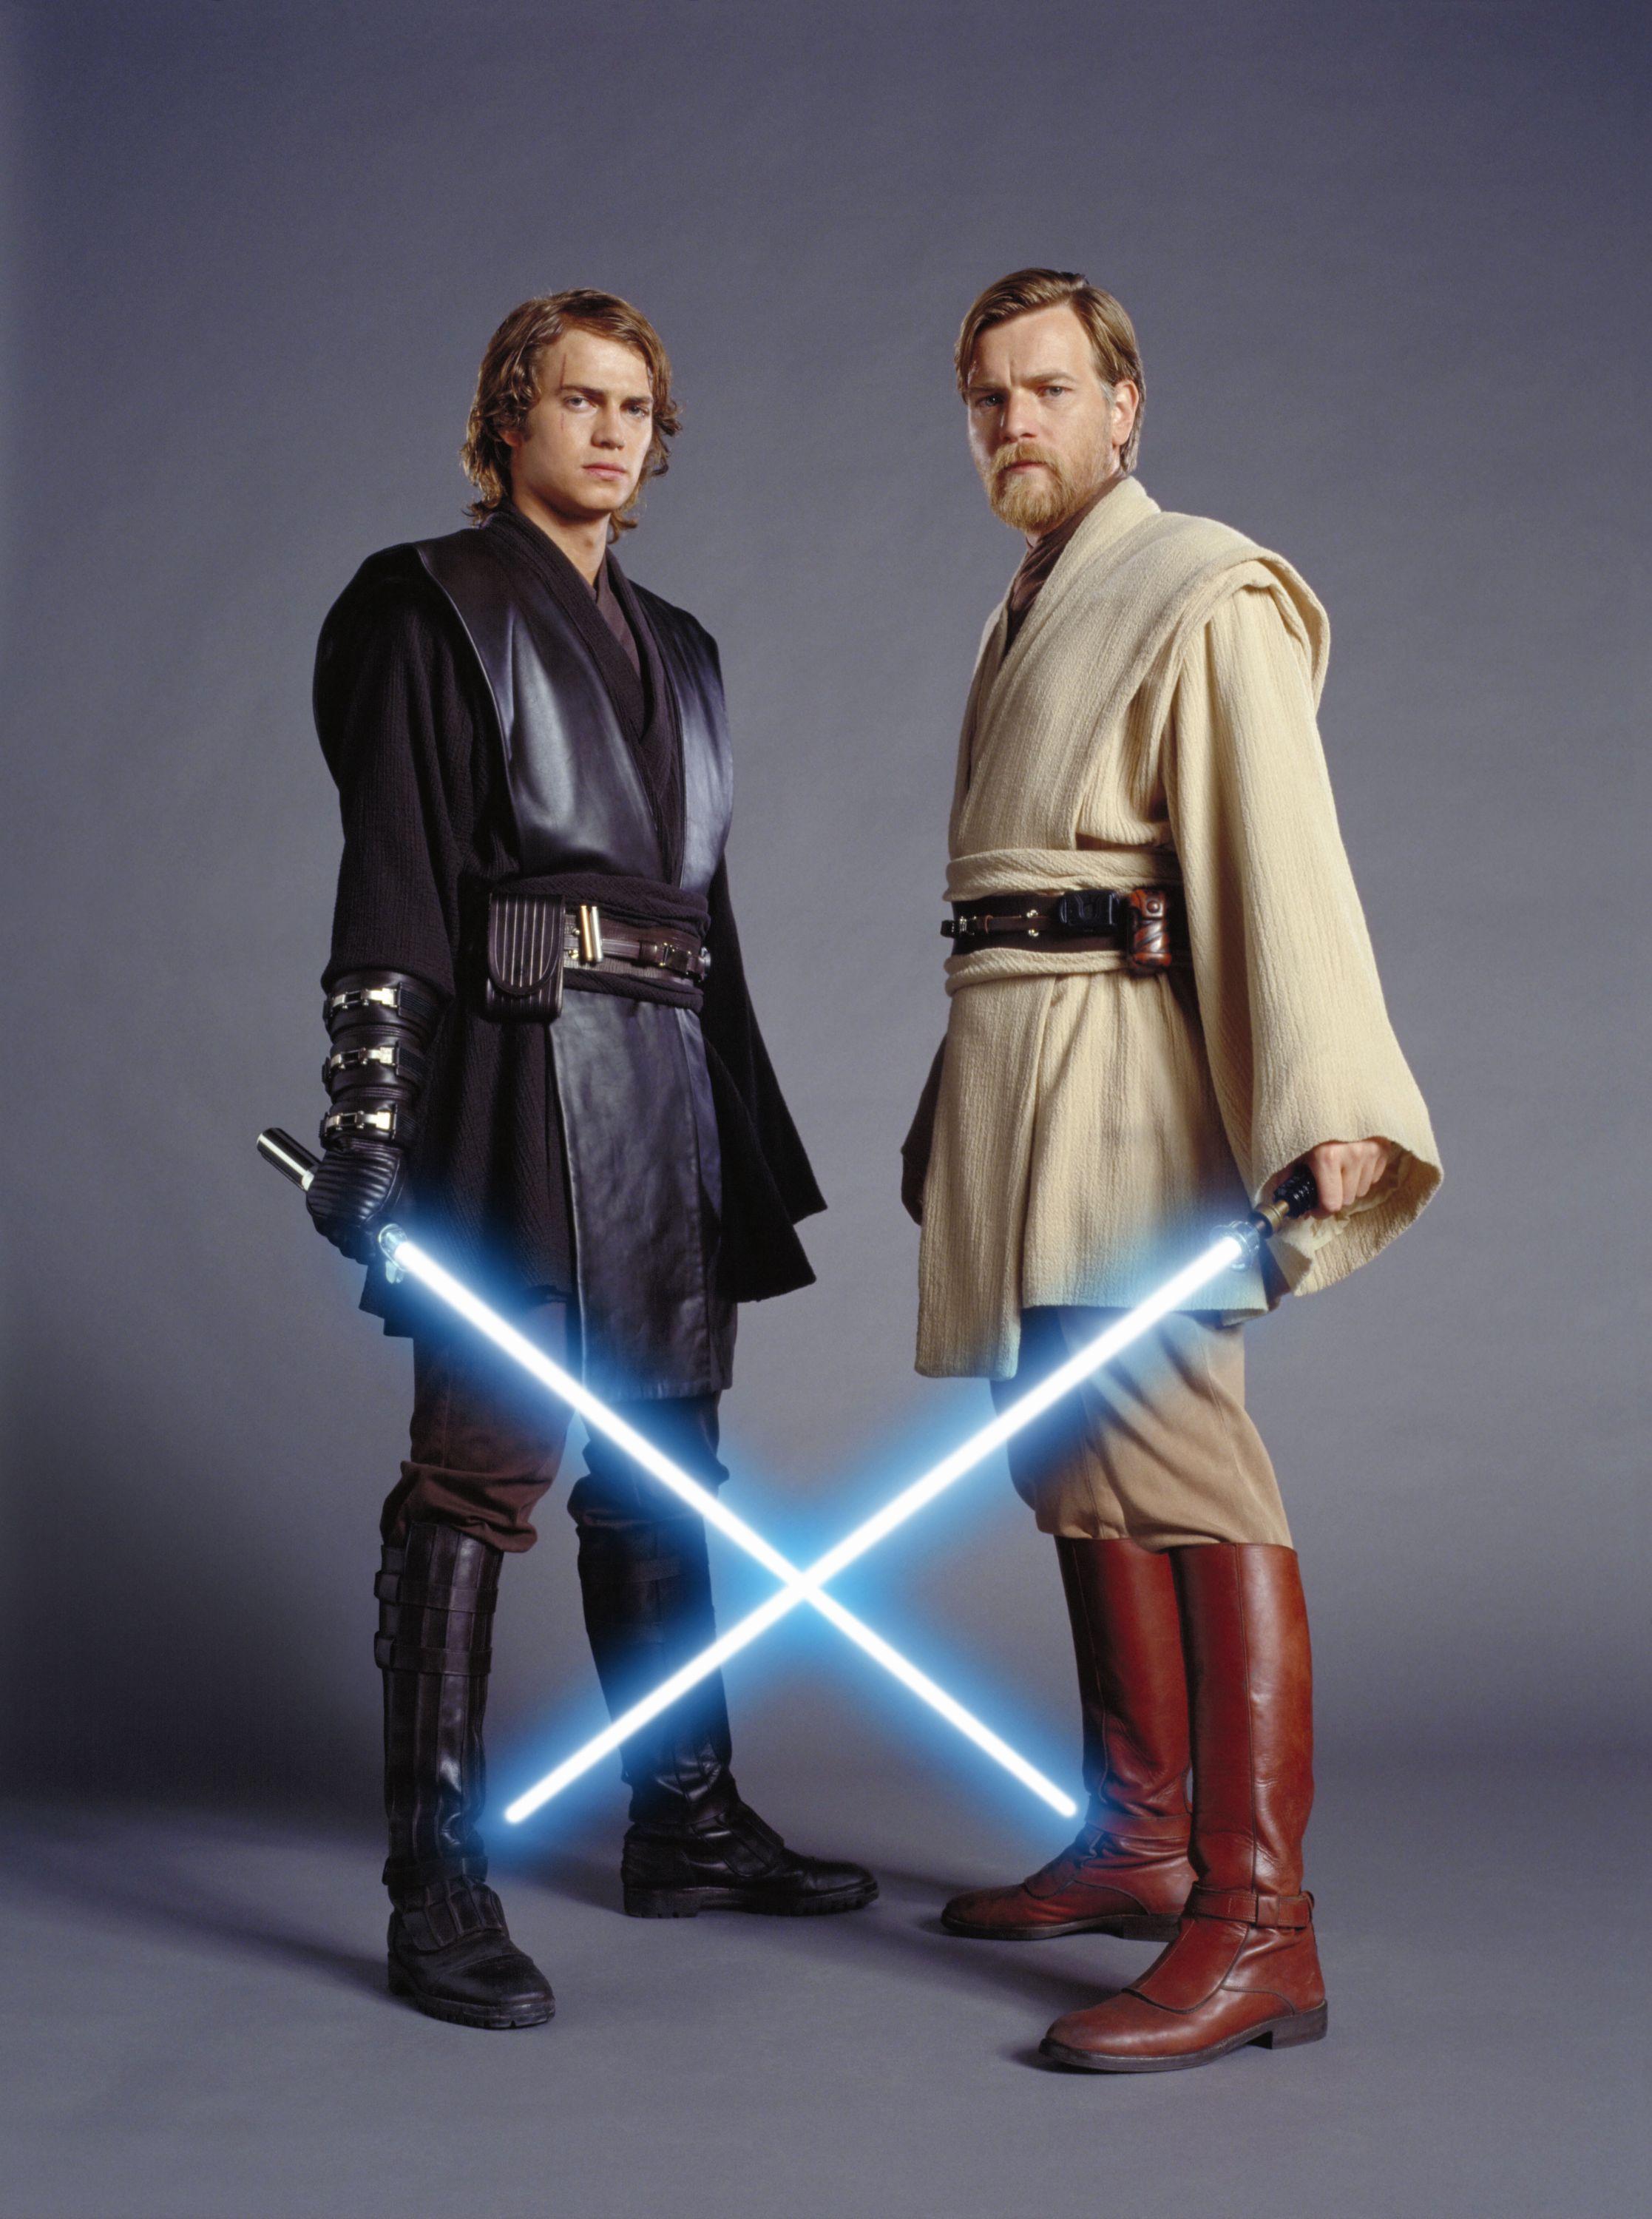 Count Dooku & General Grievous vs Anakin Skywalker & Obi Wan